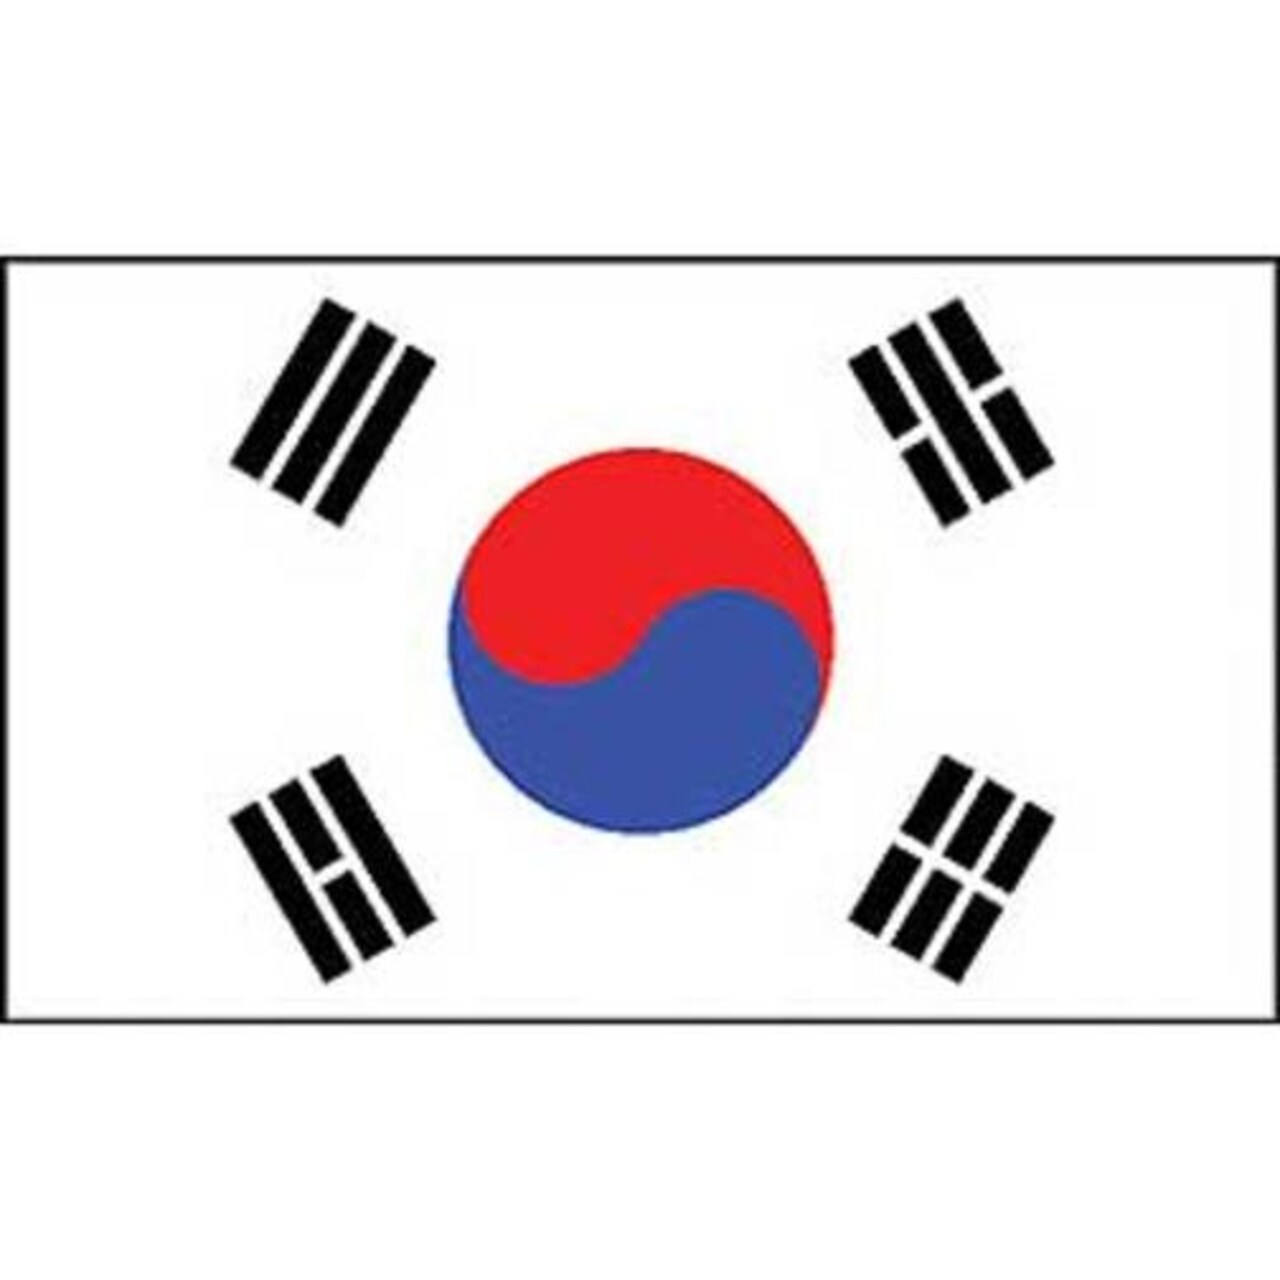 South Korea Flag On A Stick 12&#x22; x 18&#x22;